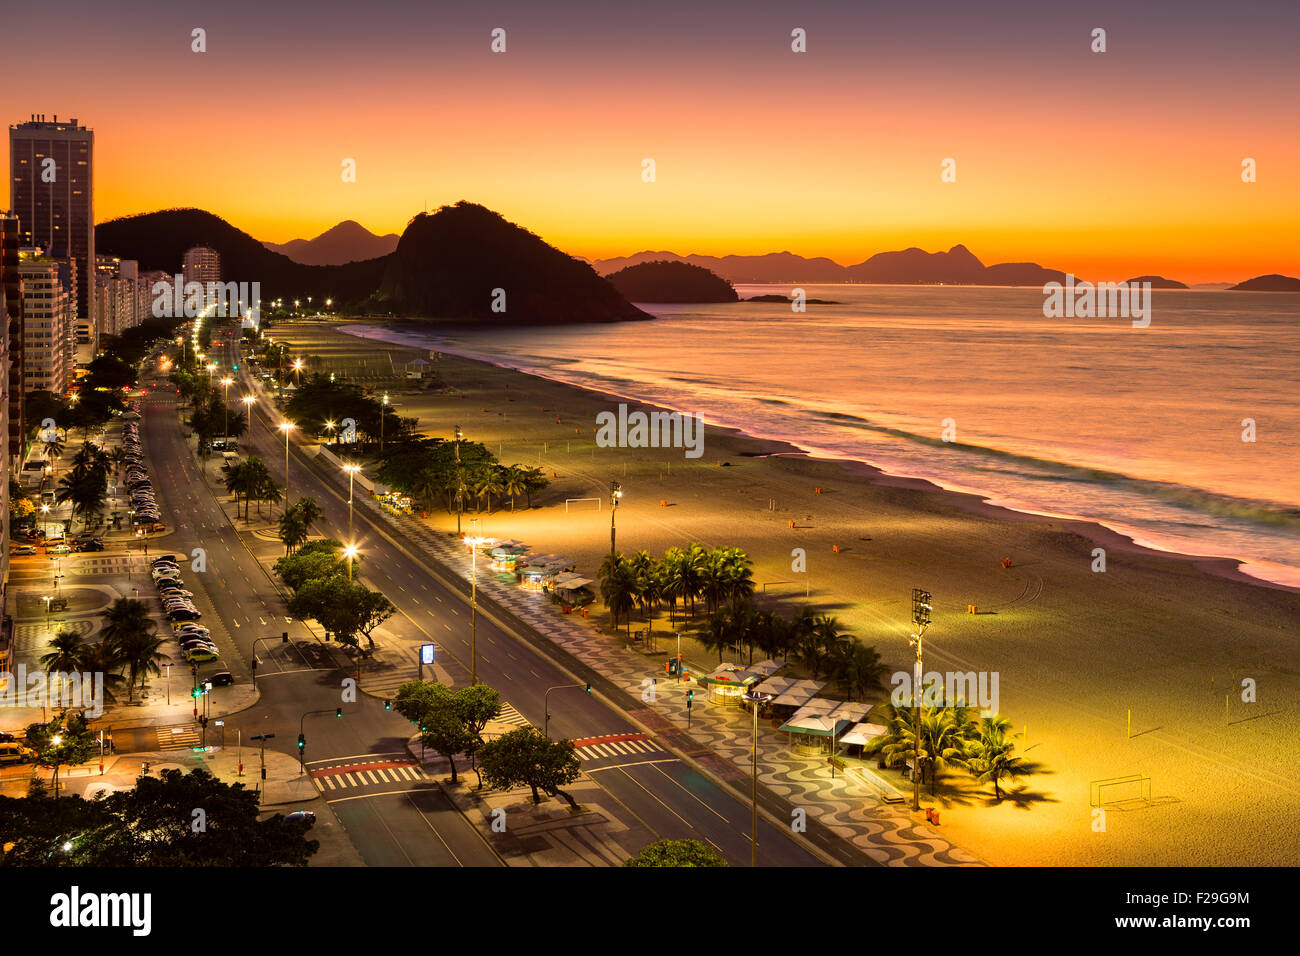 La plage de Copacabana à l'aube, à Rio de Janeiro, Brésil Banque D'Images